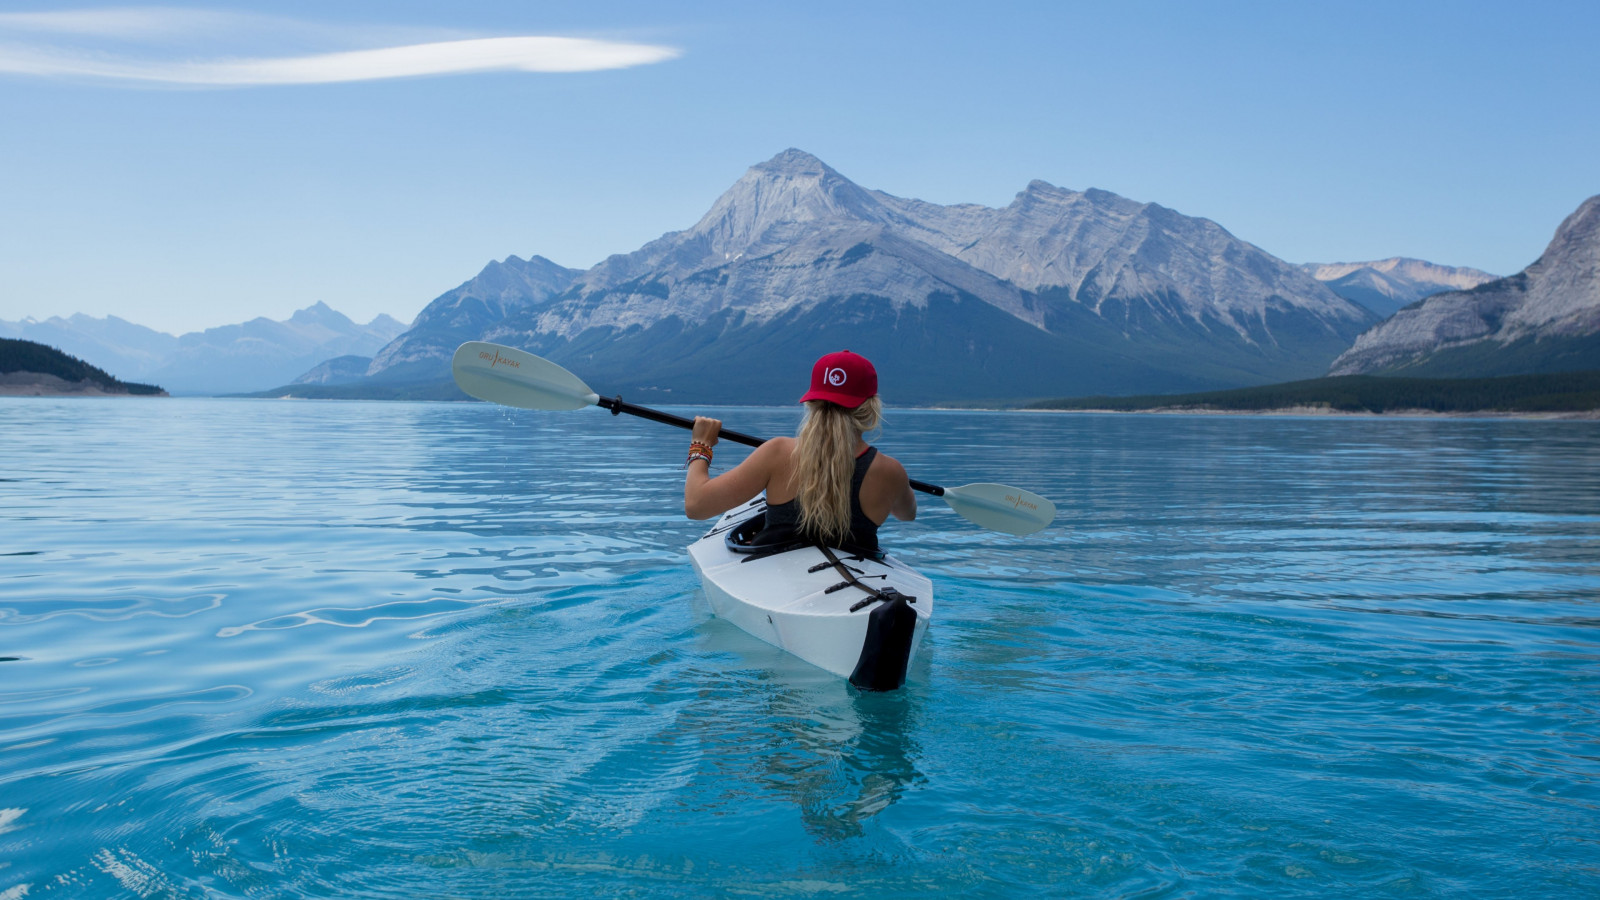 Trip with kayak on lake wallpaper 1600x900